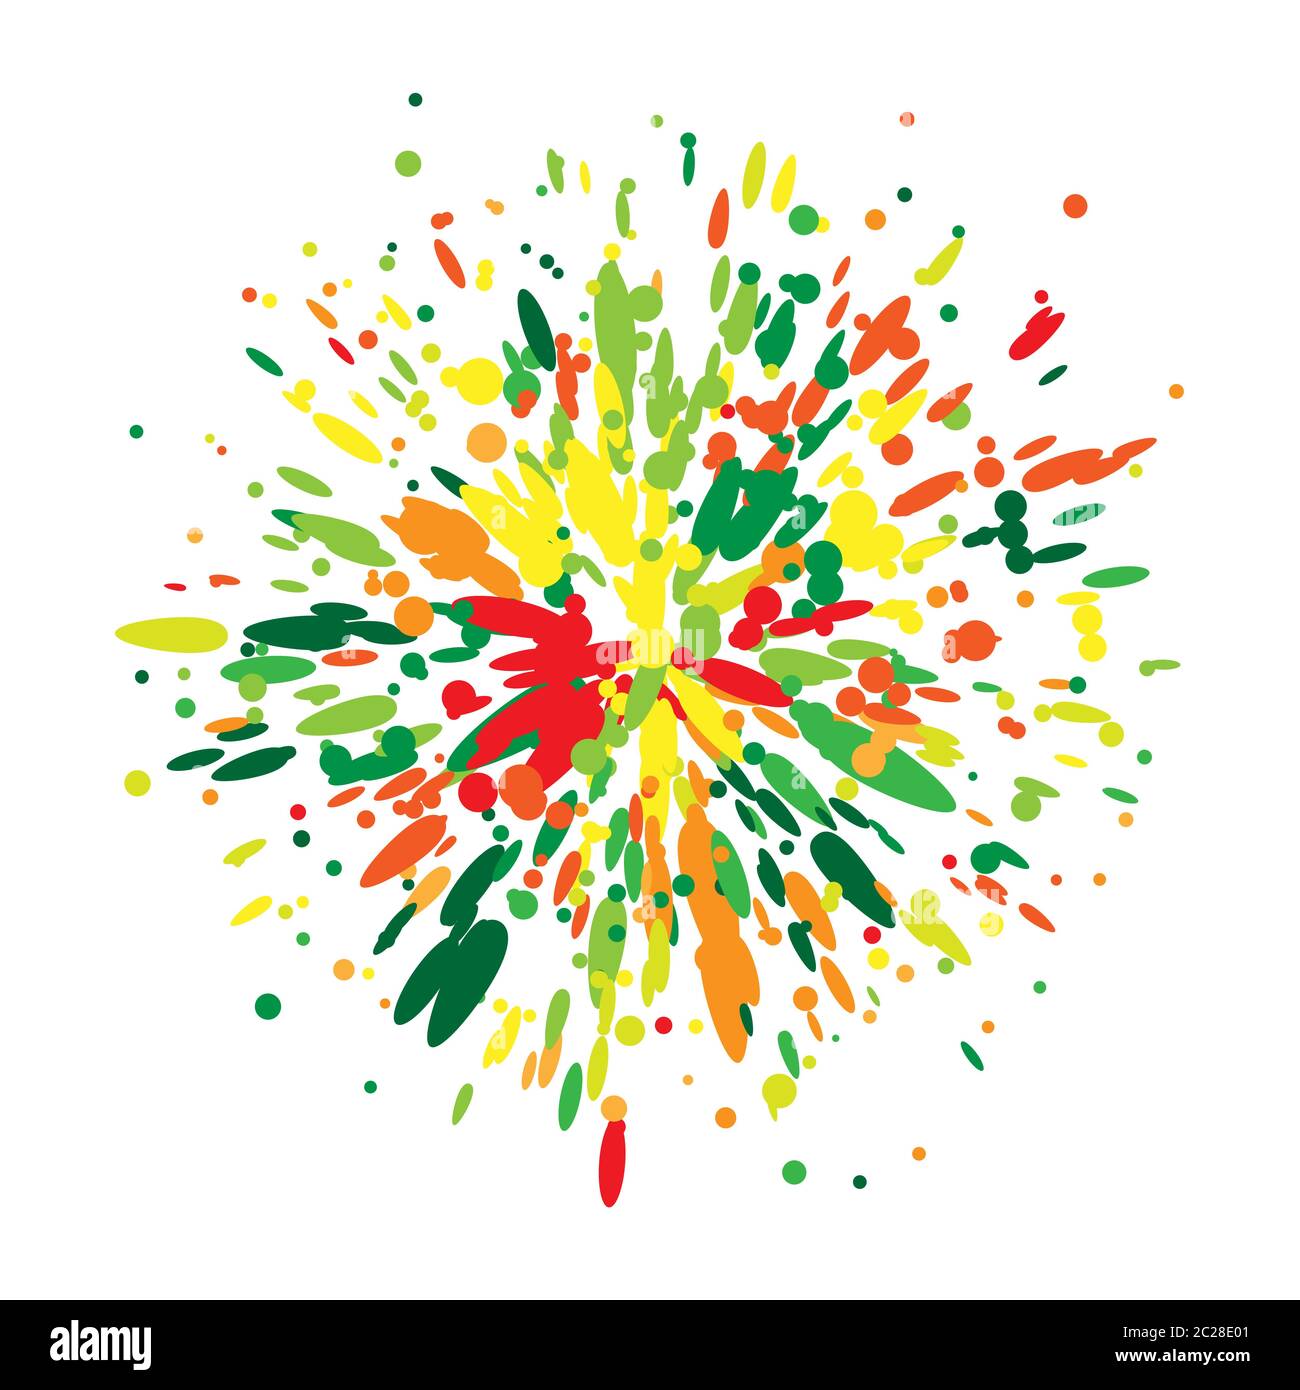 Esplosione di spruzzi di vernice arcobaleno. Elemento tipografico cartoon Illustrazione Vettoriale